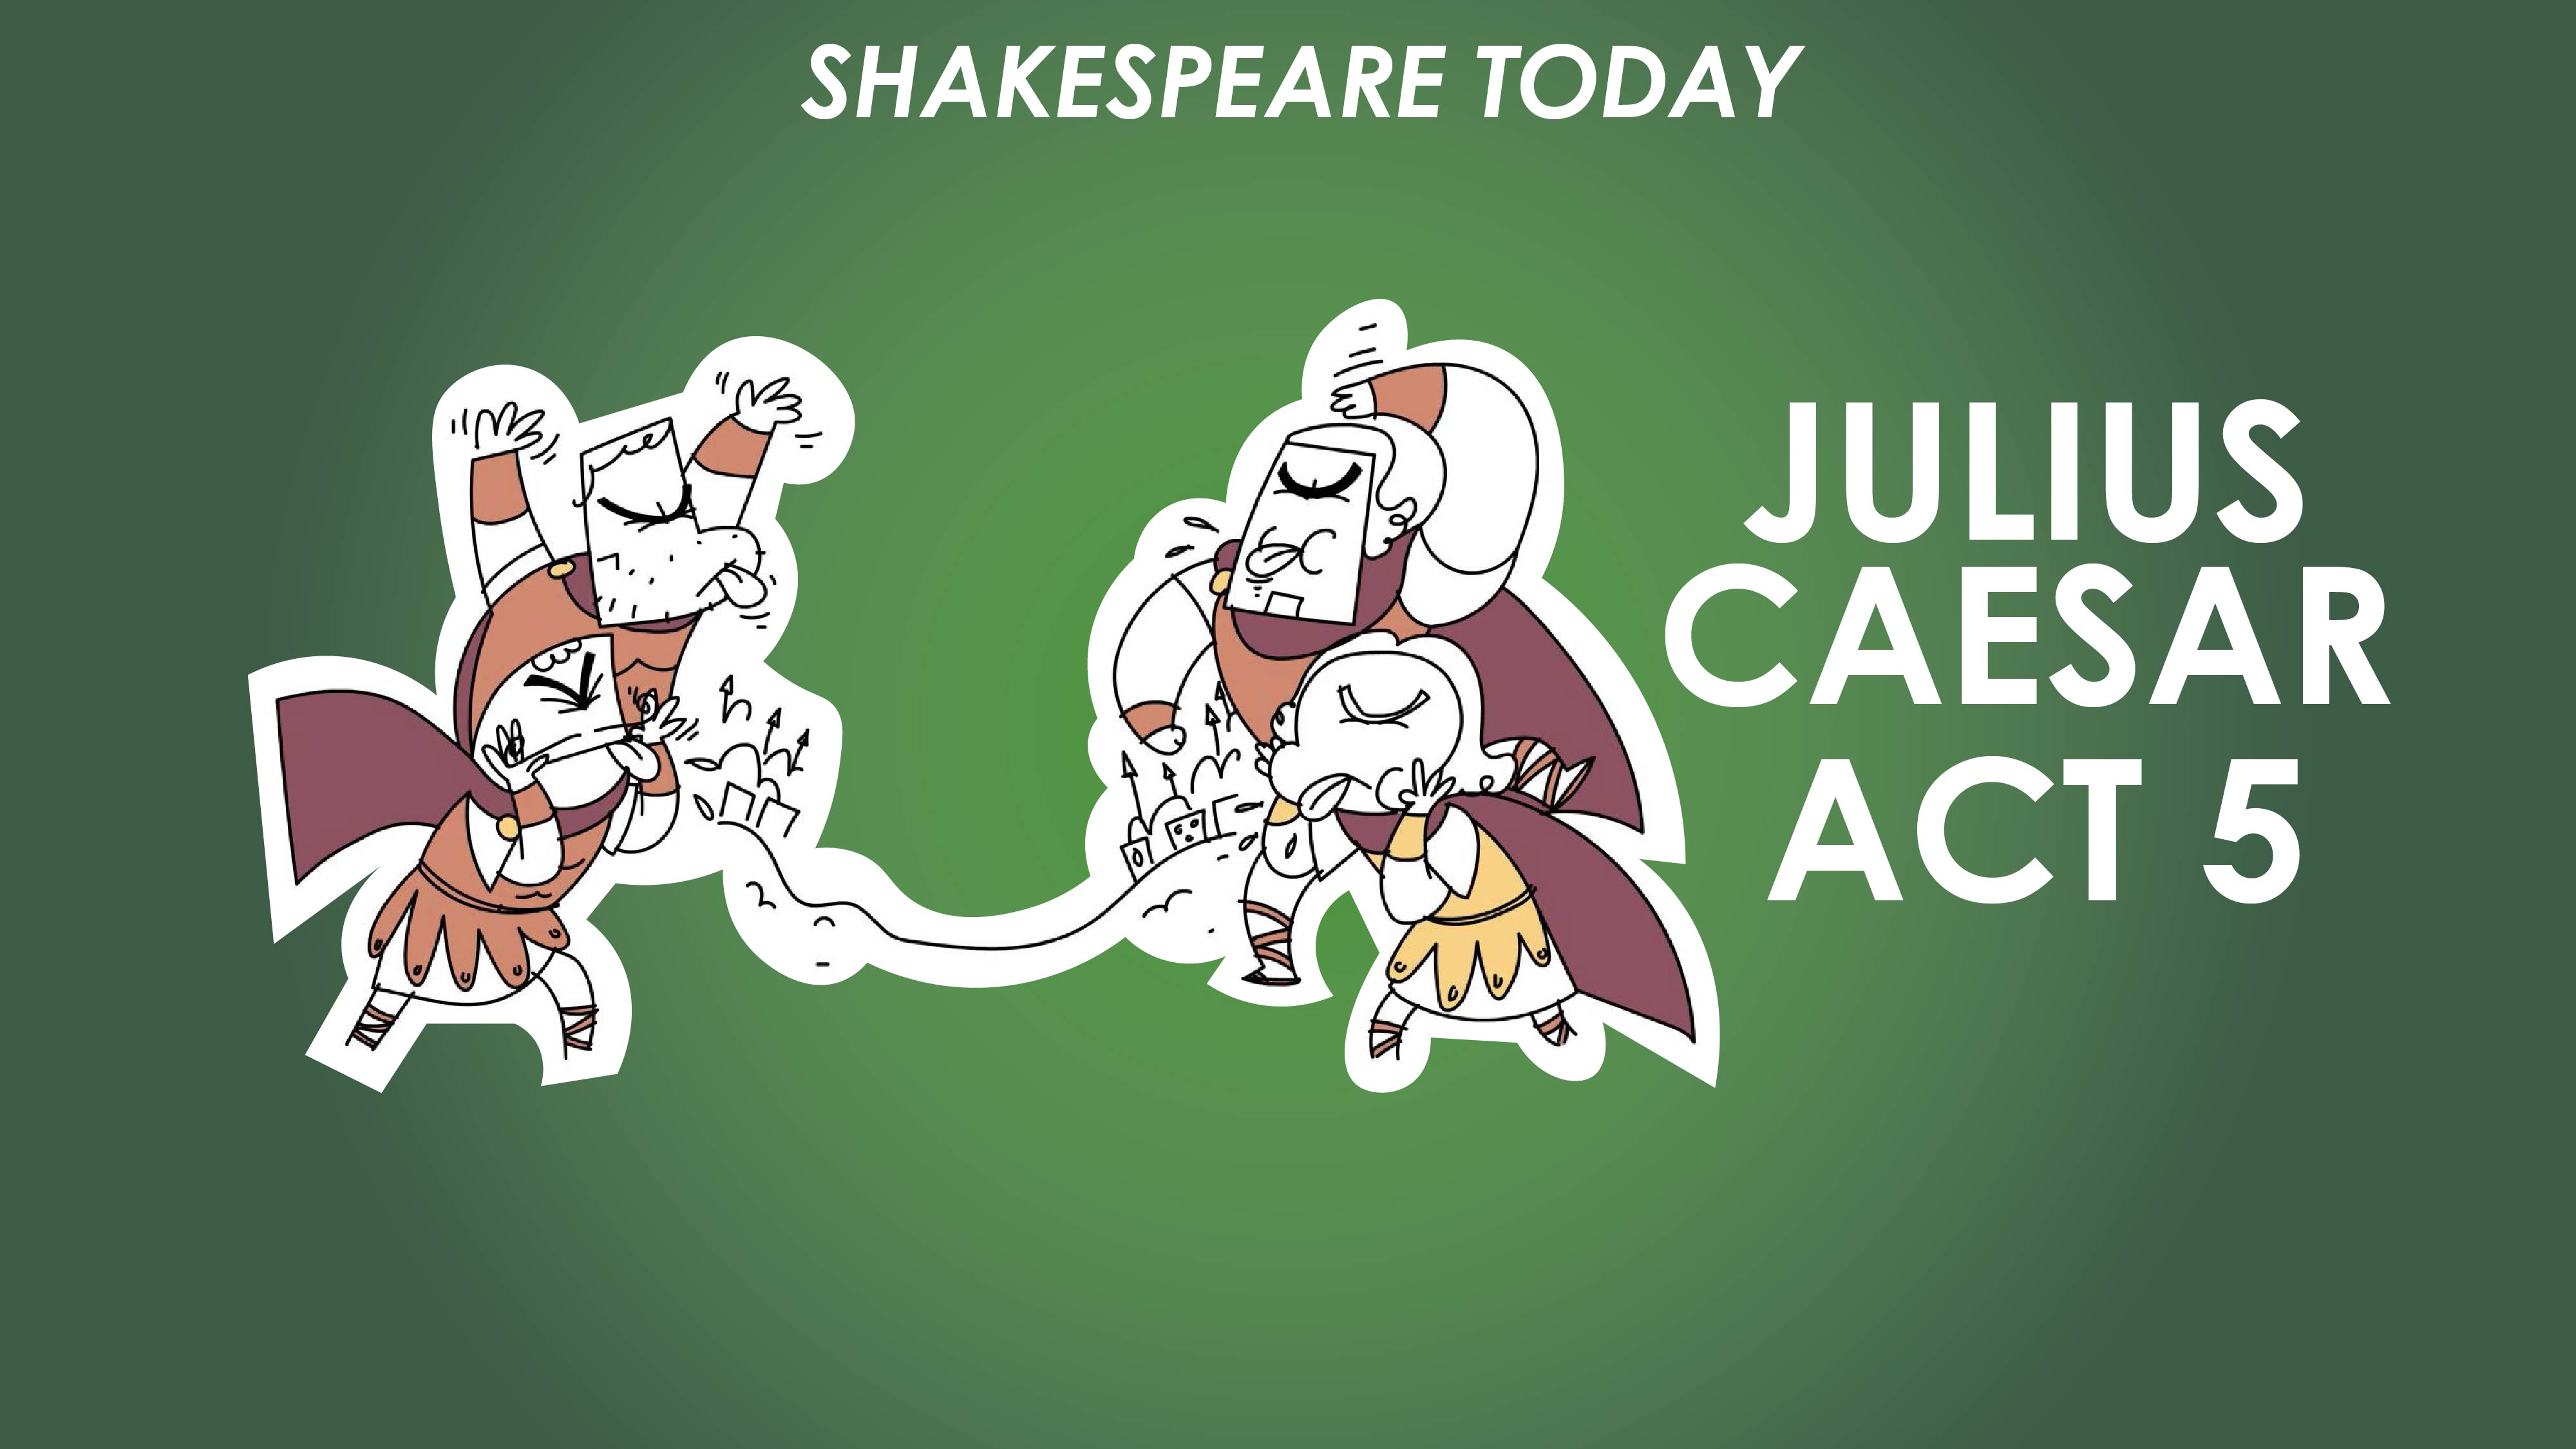 fate vs free will in julius caesar